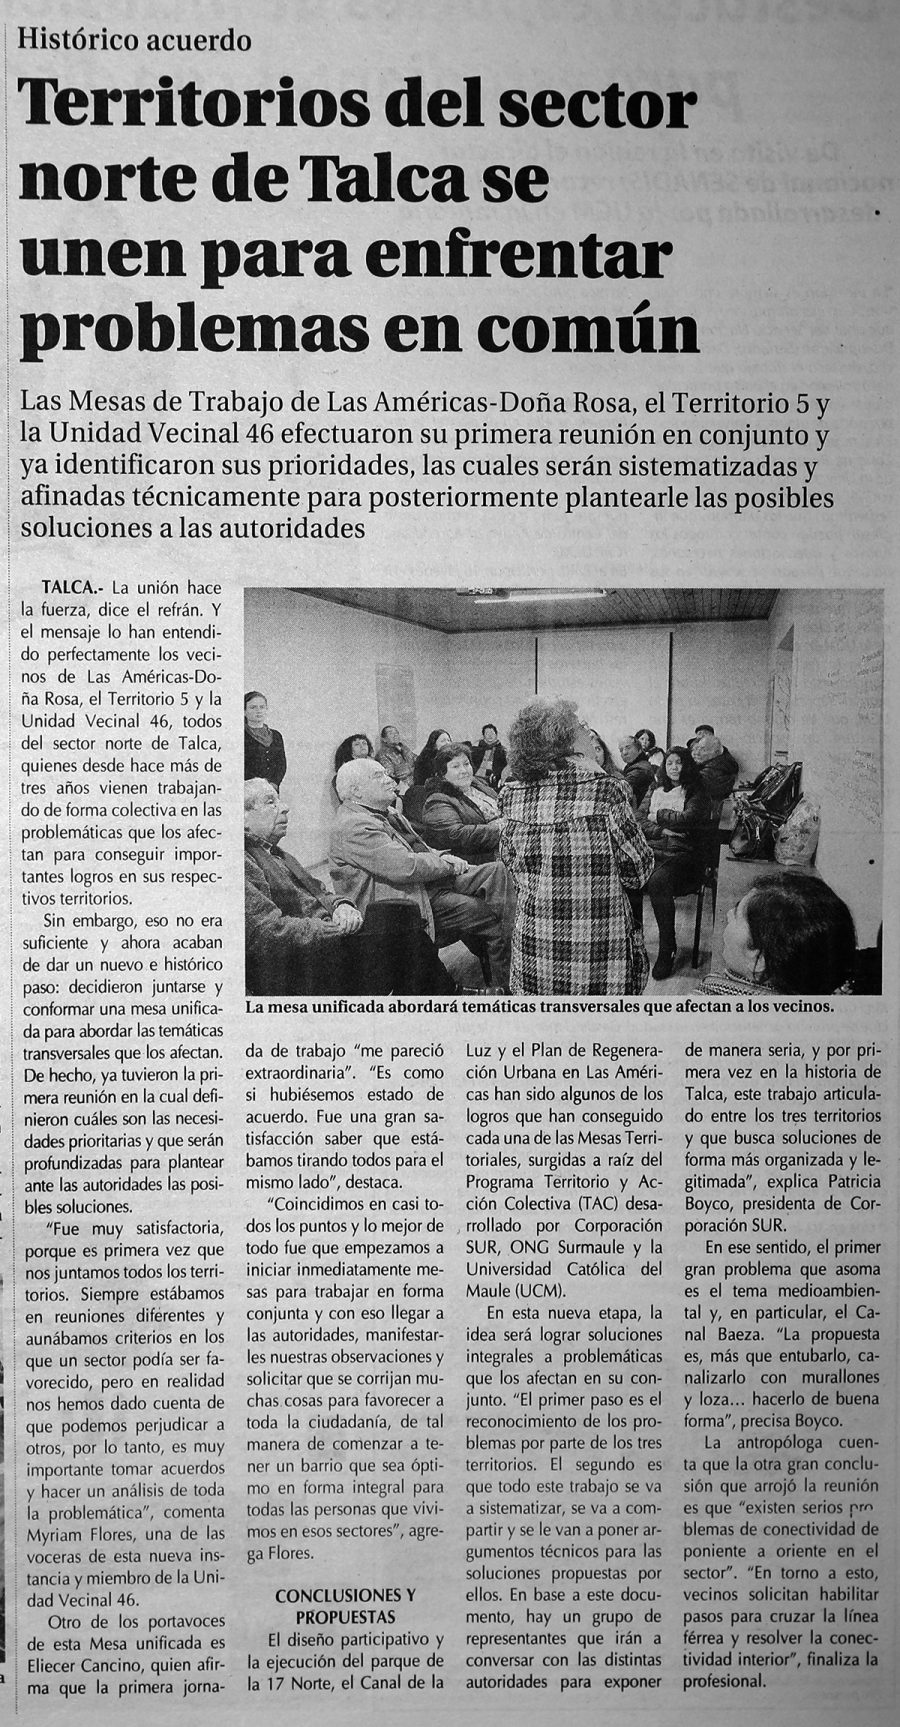 24 de julio en Diario El Centro: “Territorios del sector norte de Talca se unen para enfrentar problemas en común”